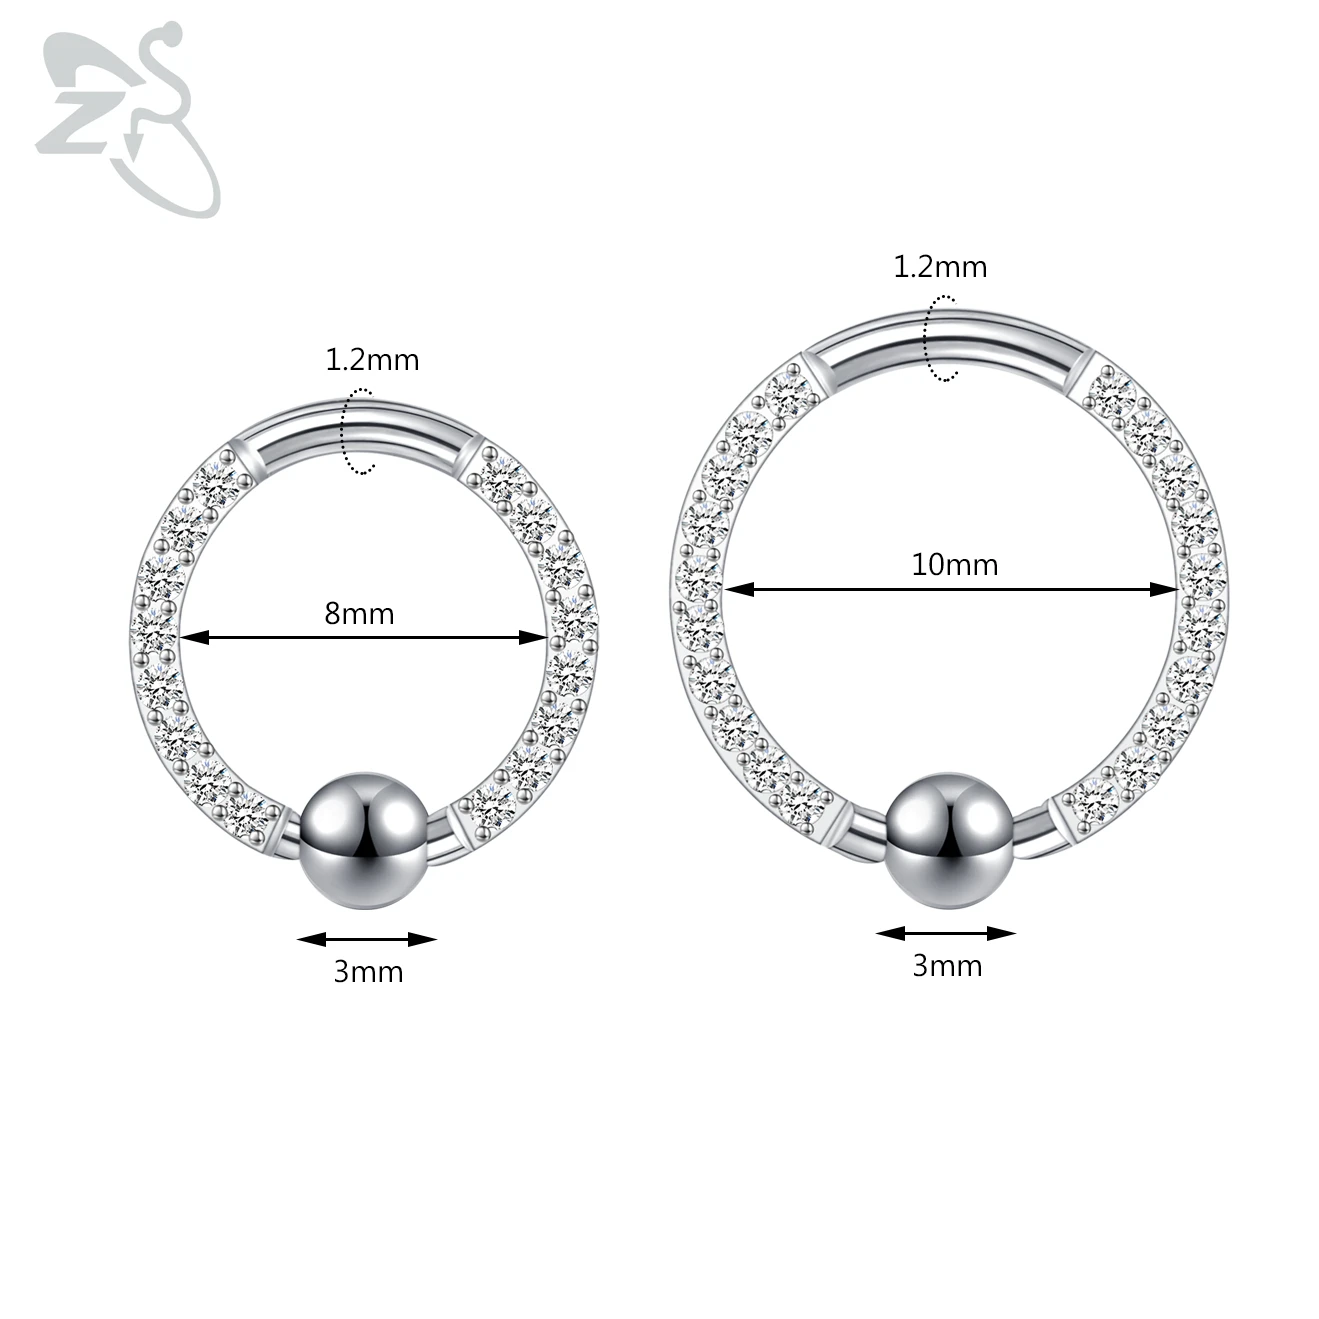 ZS 1 pezzo CZ Crystal Hoop Nose Ring 8/10MM acciaio inossidabile setto Clicker orecchio nero elica cartilagine Tragus Piercing gioielli 16g